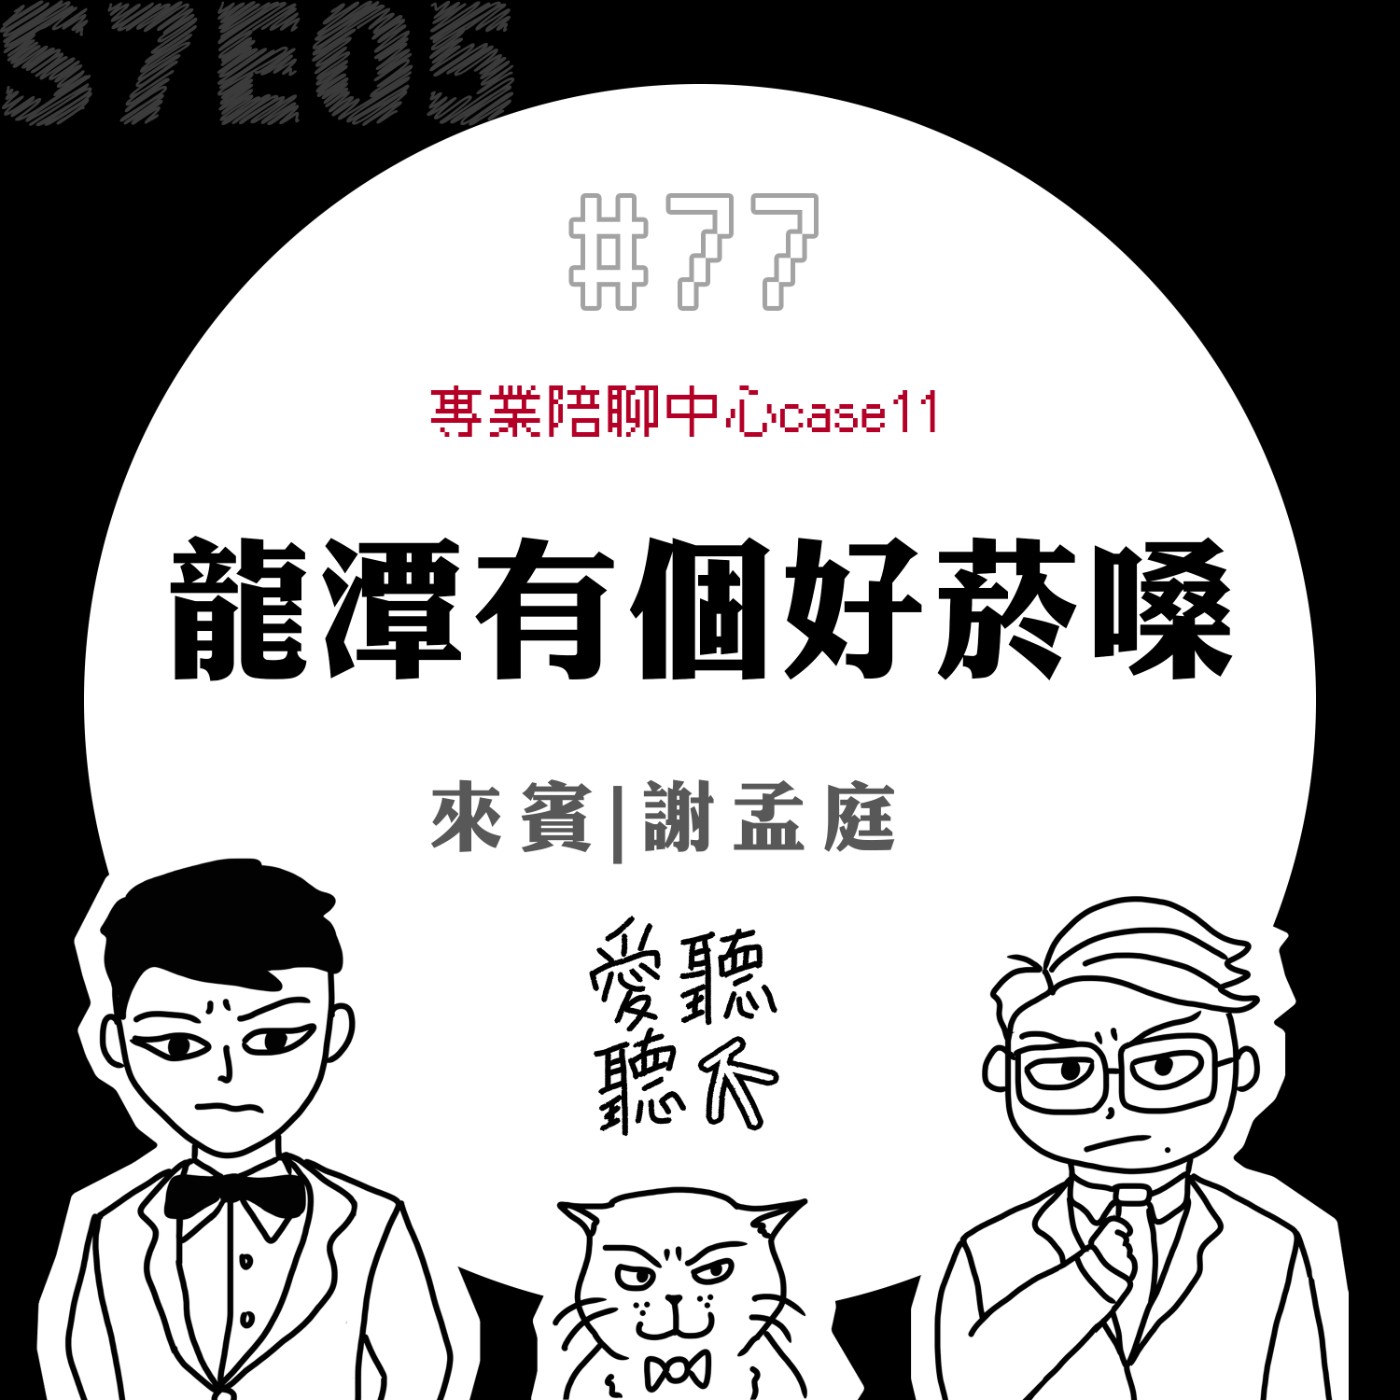 #77 龍潭有個好菸嗓 feat. 謝孟庭